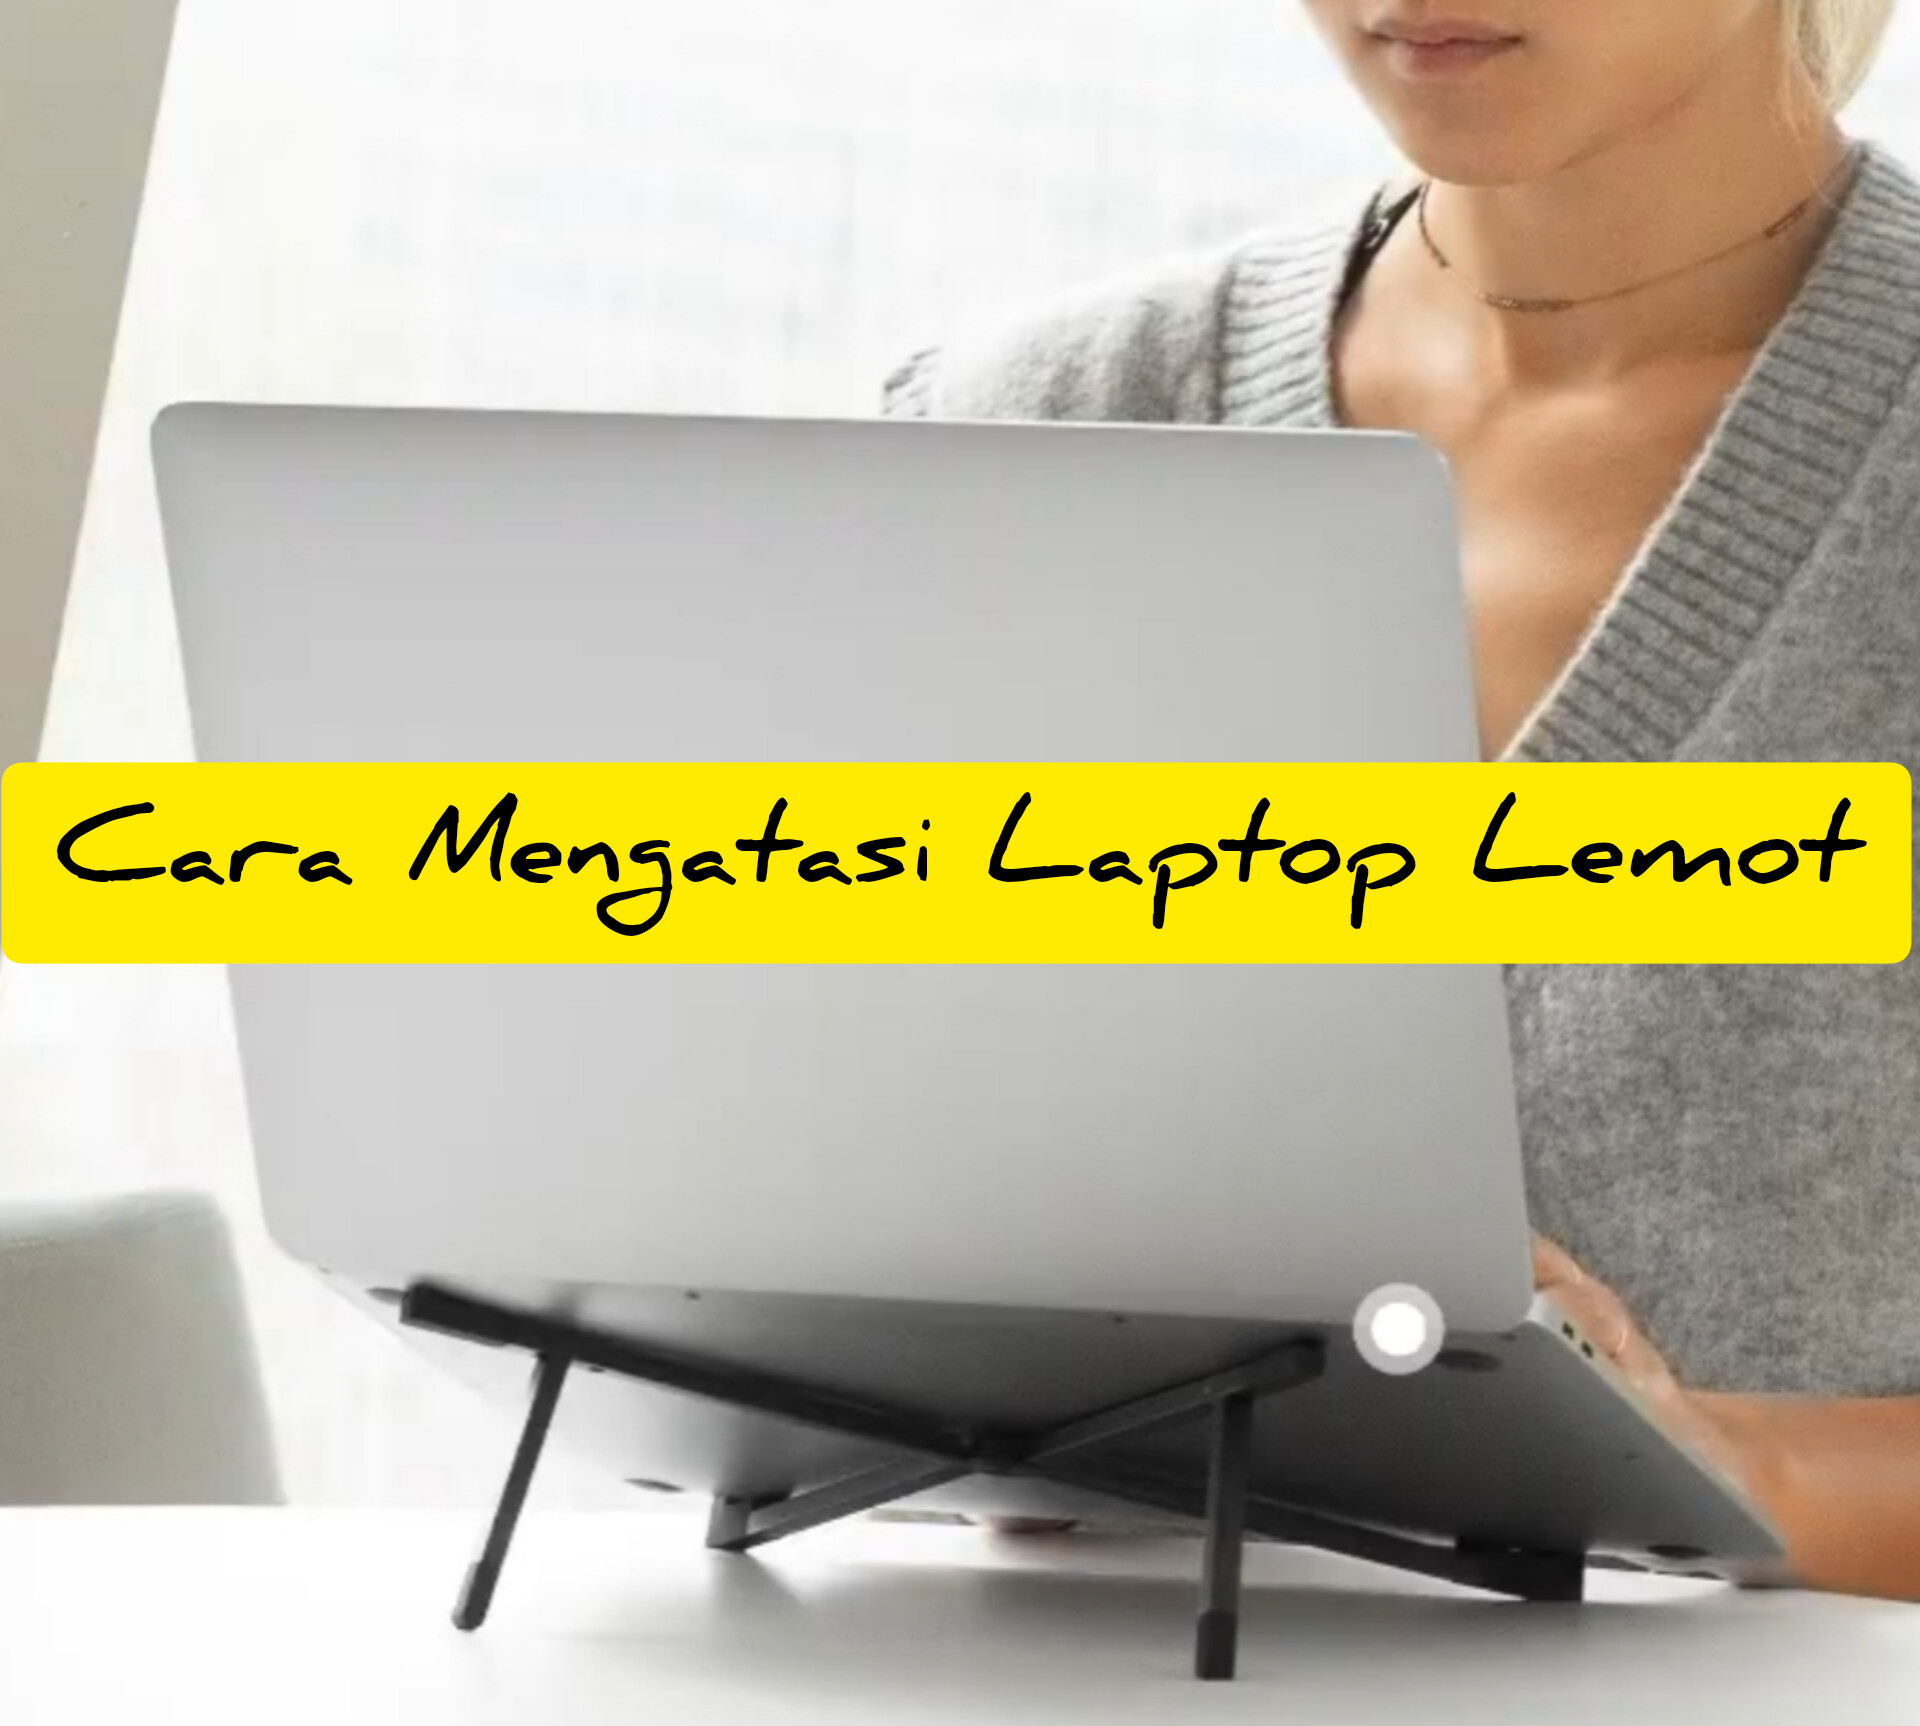 Banyak Belum Tau! 5 Rekomendasi Mengatasi Laptop Lemot